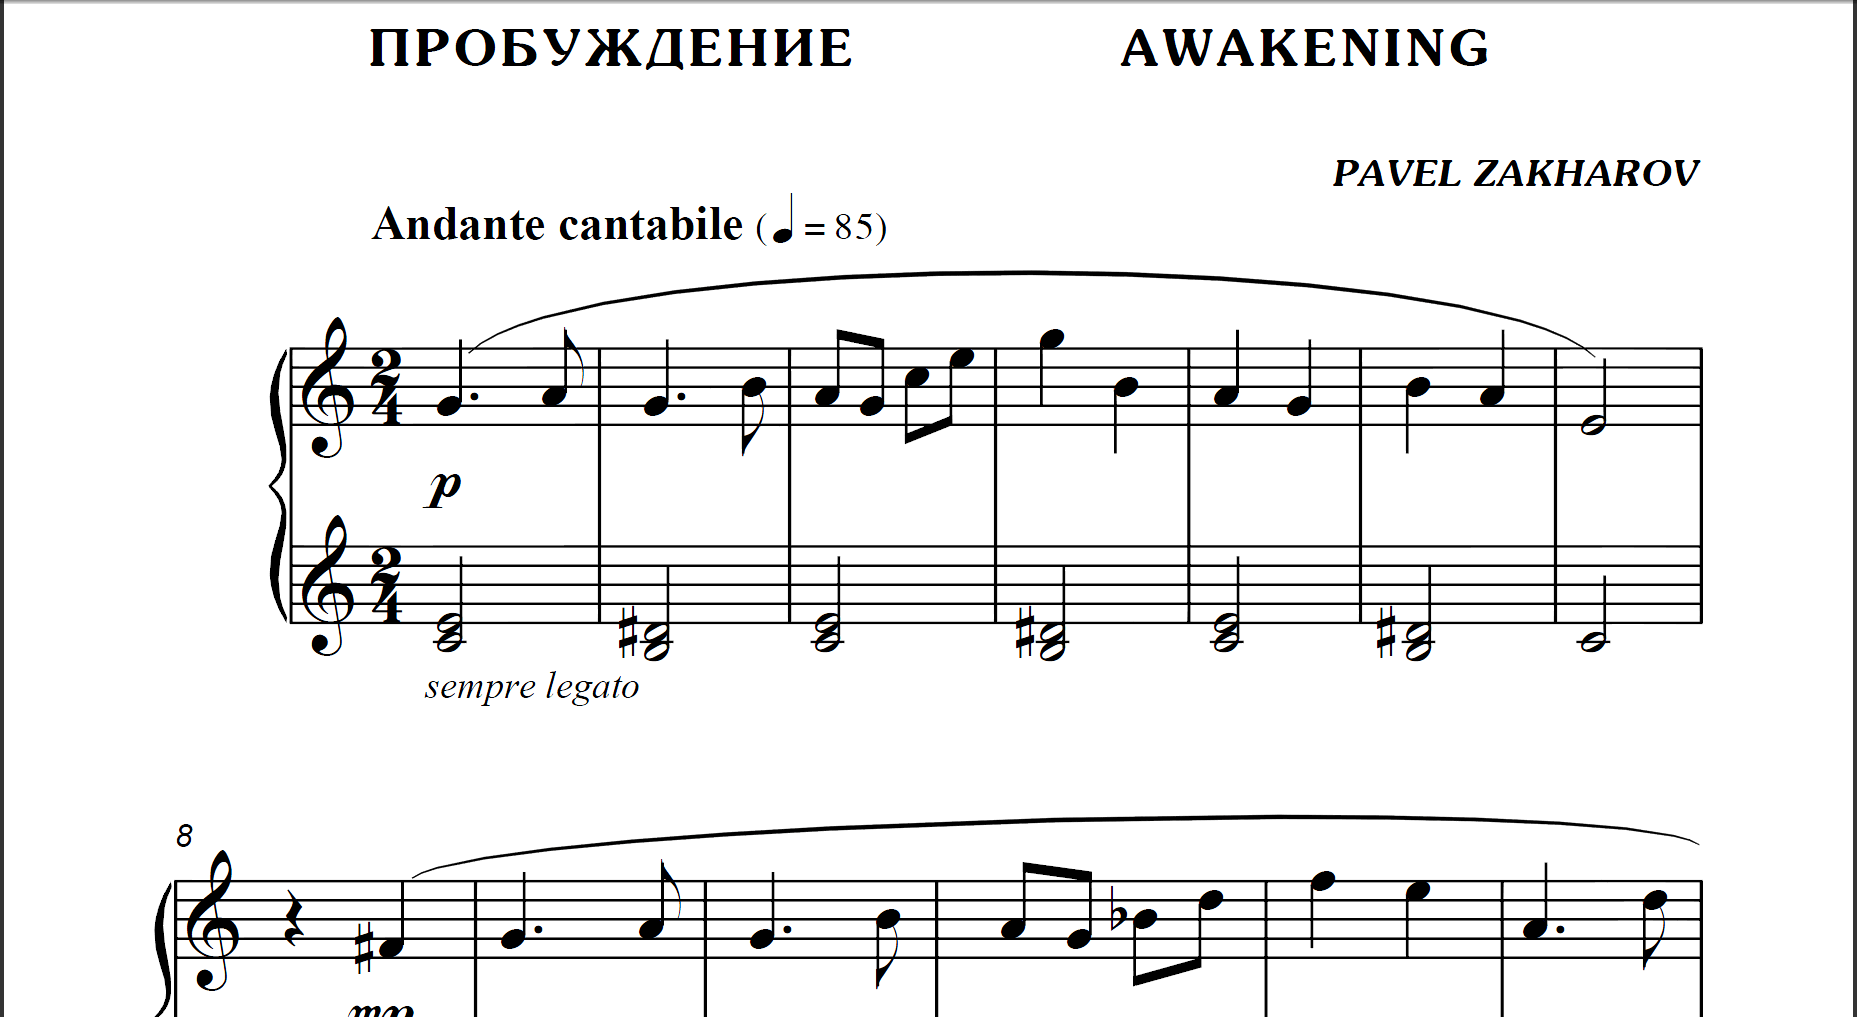 1s06 Awakening, PAVEL ZAKHAROV / piano